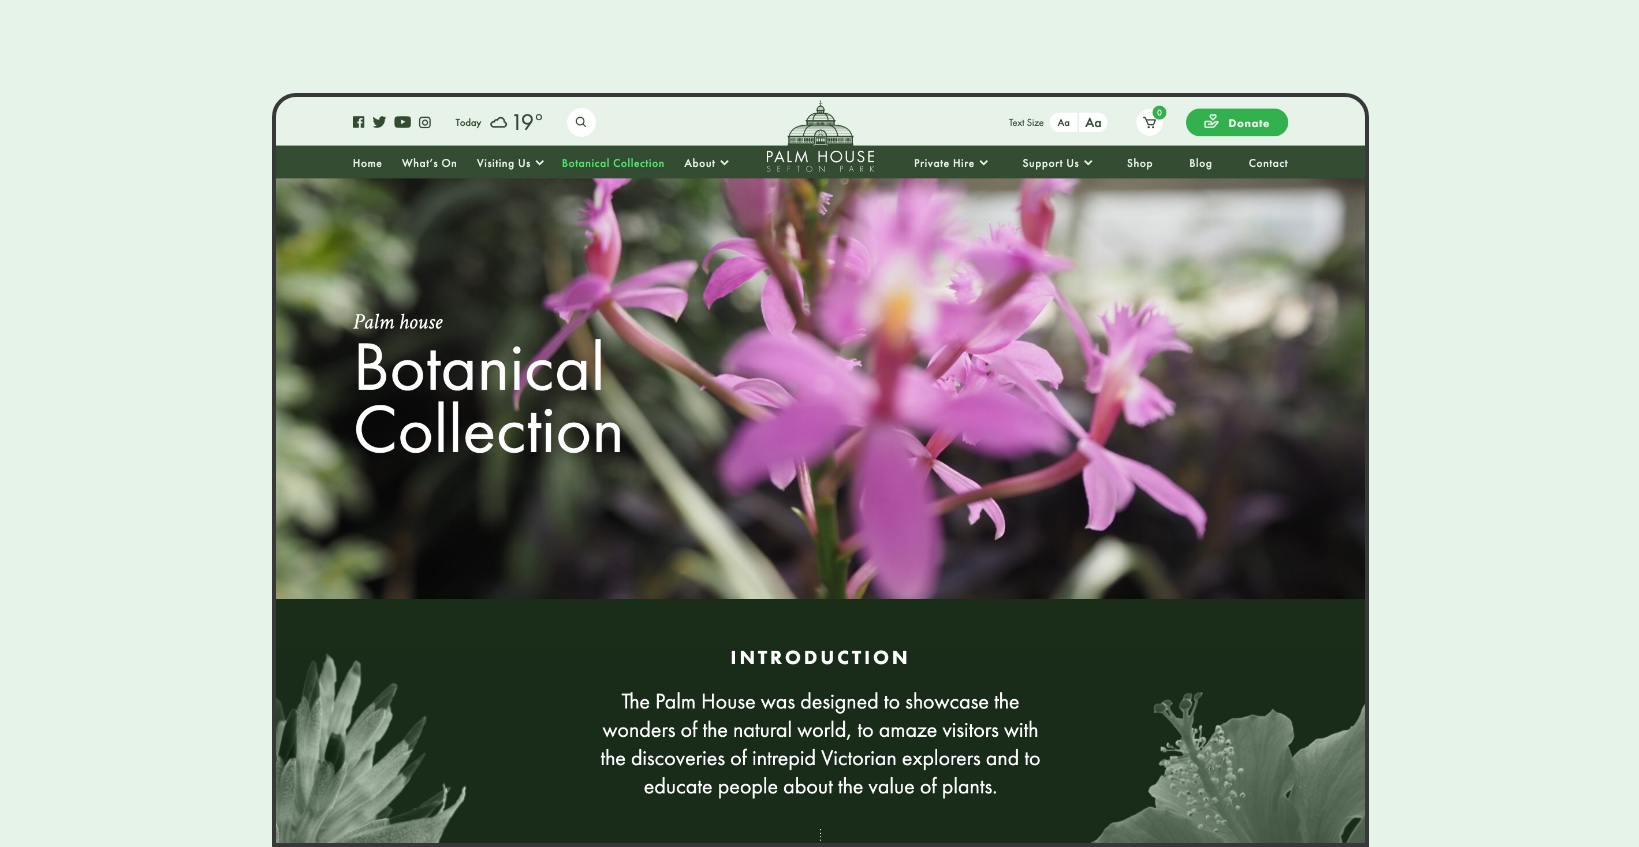 Sefton Park Palm House: Website Design - Desktop